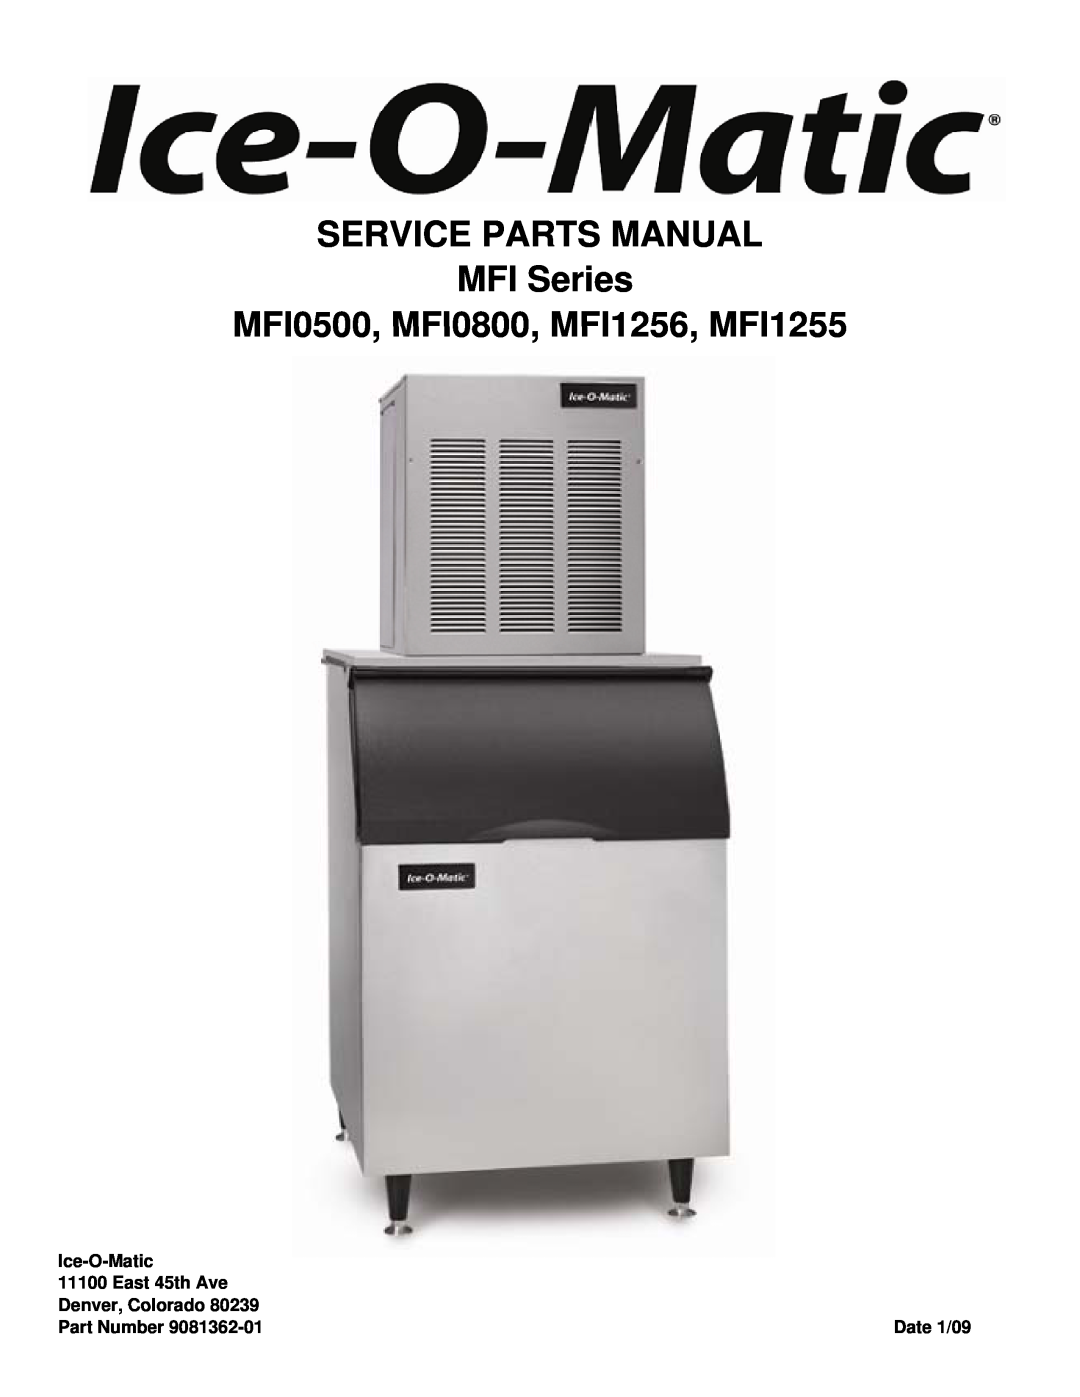 Ice-O-Matic manual SERVICE PARTS MANUAL MFI Series MFI0500, MFI0800, MFI1256, MFI1255, Ice-O-Matic, East 45th Ave 